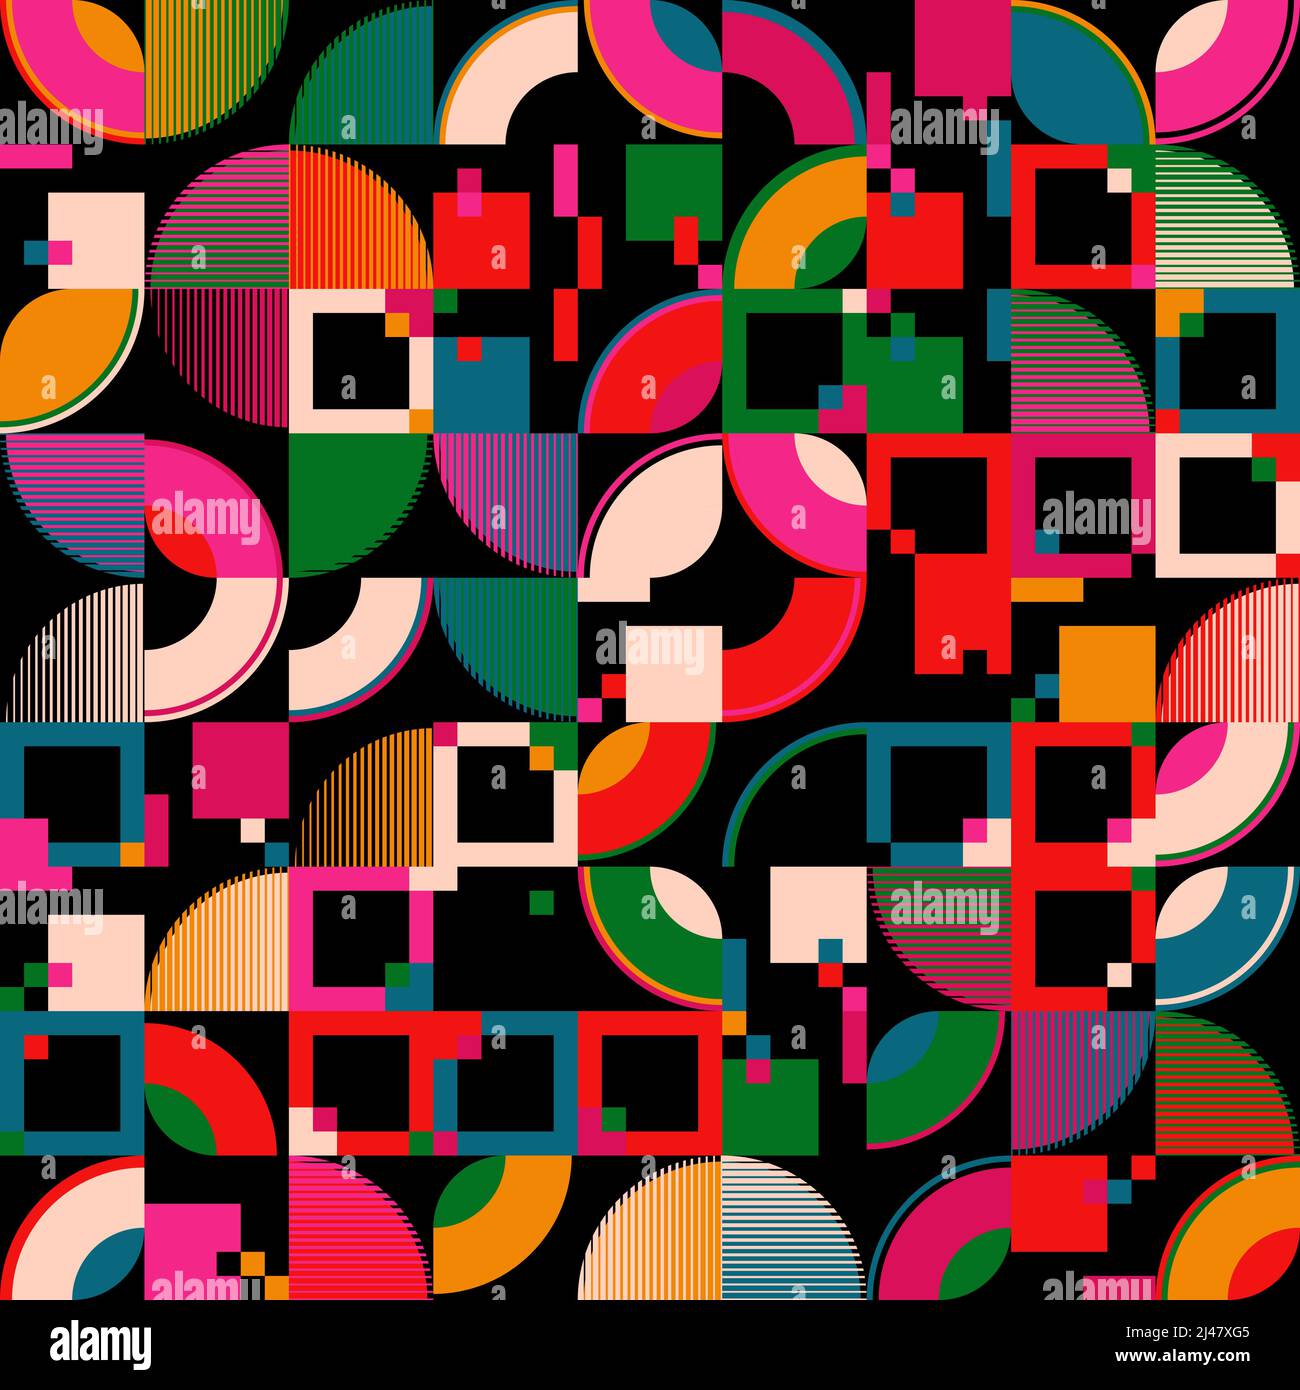 Grafica vettoriale astratta colorata al neon realizzata con varie forme geometriche ed elementi. Grafica digitale per poster, copertina, arte, presentazione Illustrazione Vettoriale